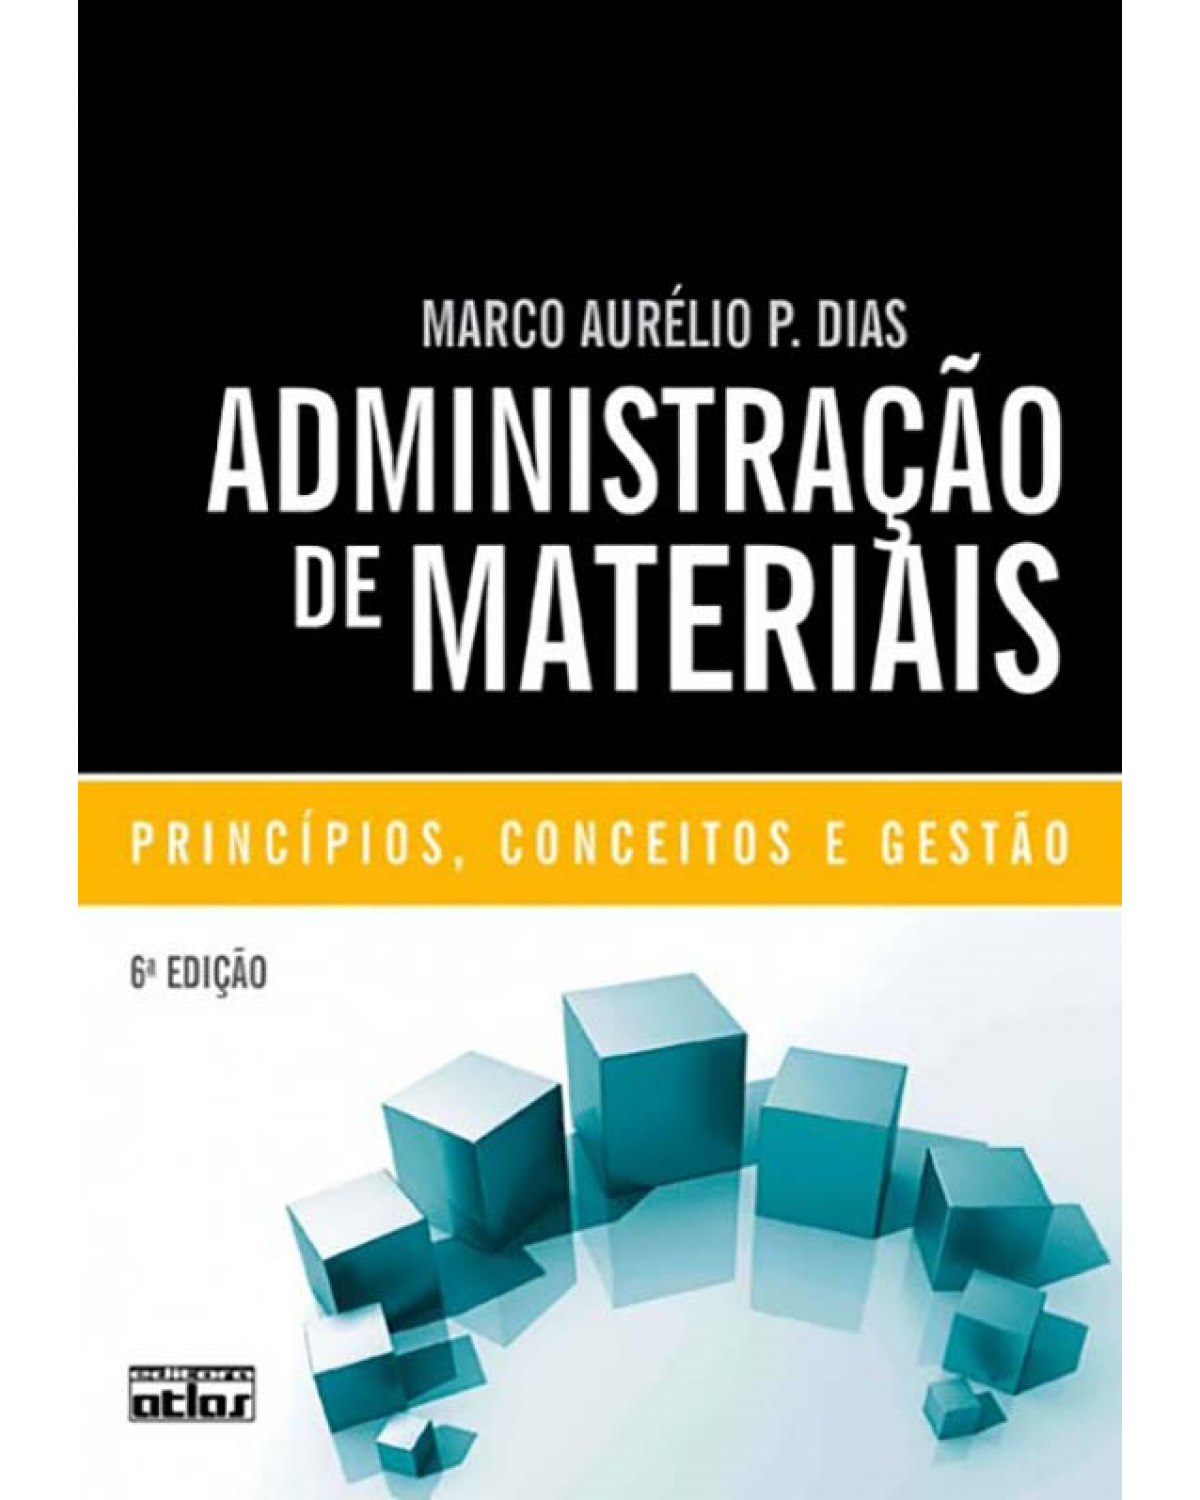 Administração de materiais - Princípios, conceitos e gestão - 6ª Edição | 2009